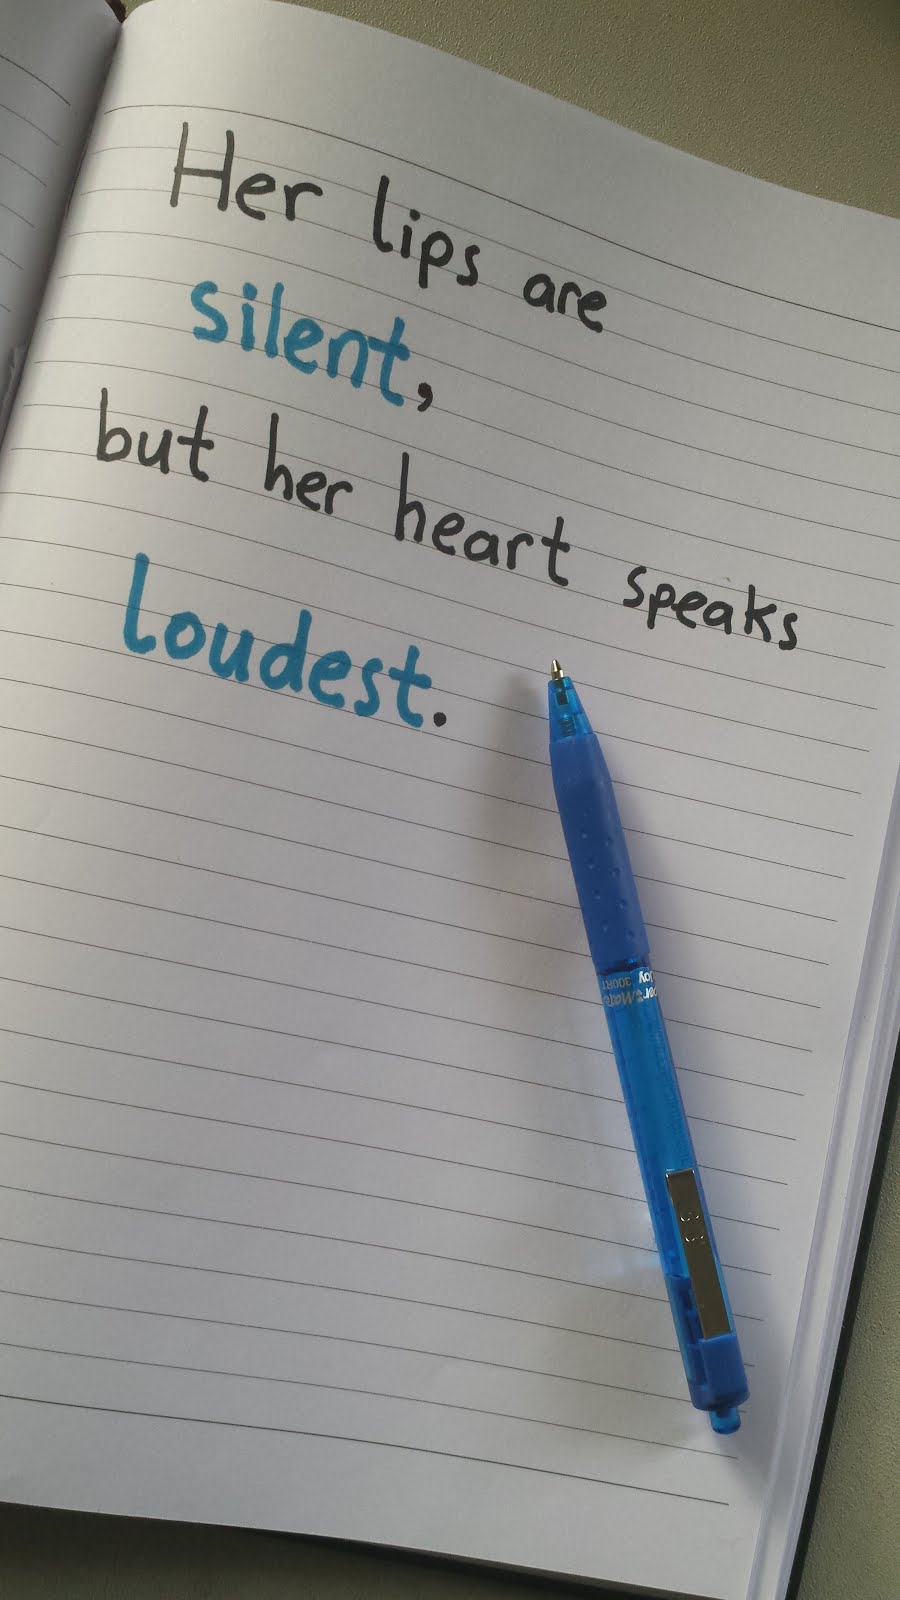 When the Heart Speaks